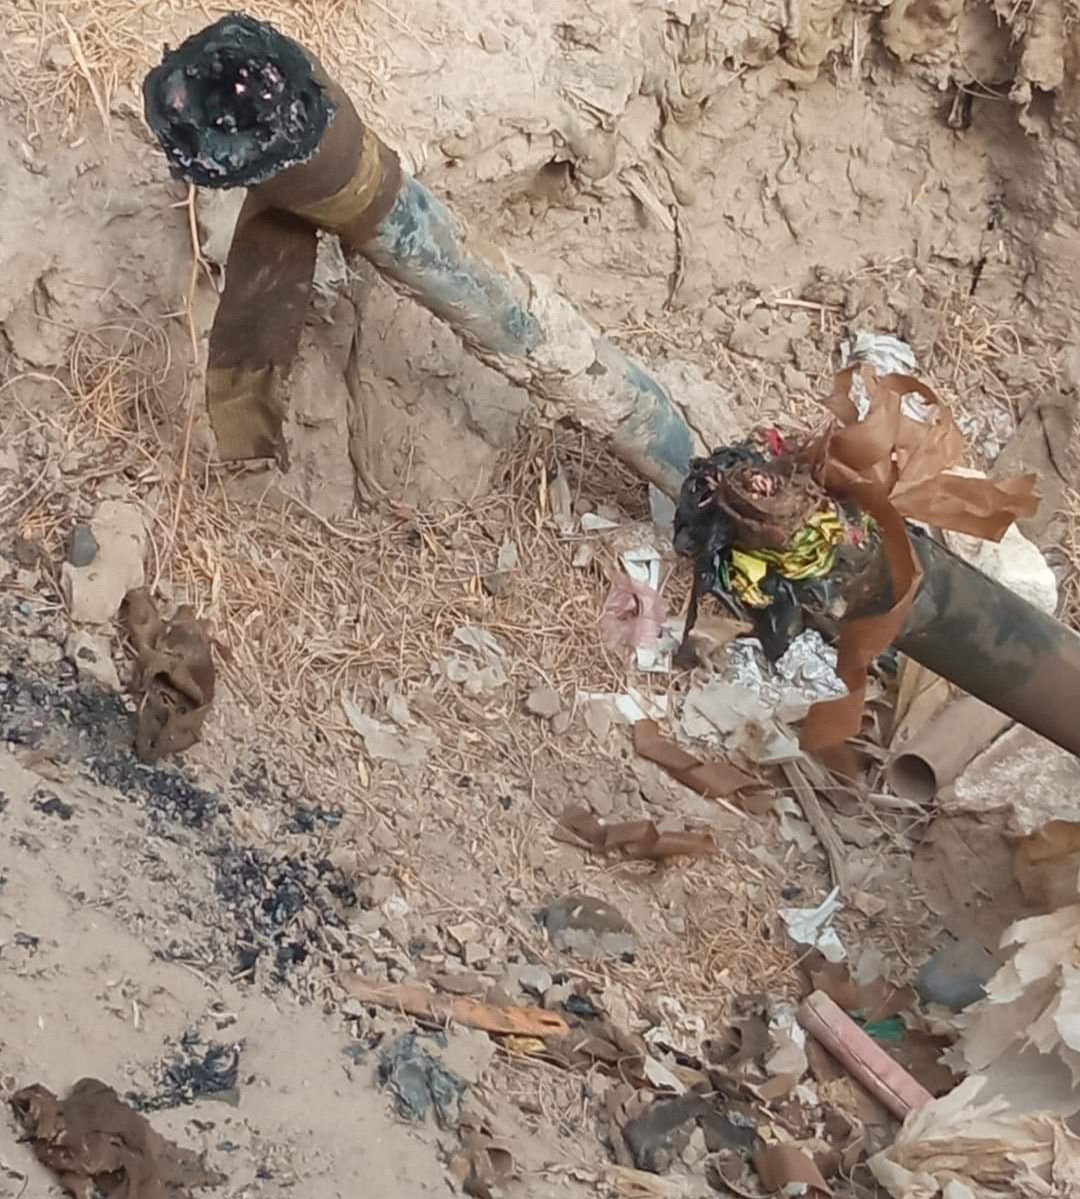 مؤسسة كهرباء لحج تعلن عن تعرض أحد كابلات الضغط العالي11 للسرقة بمدينة الحوطة